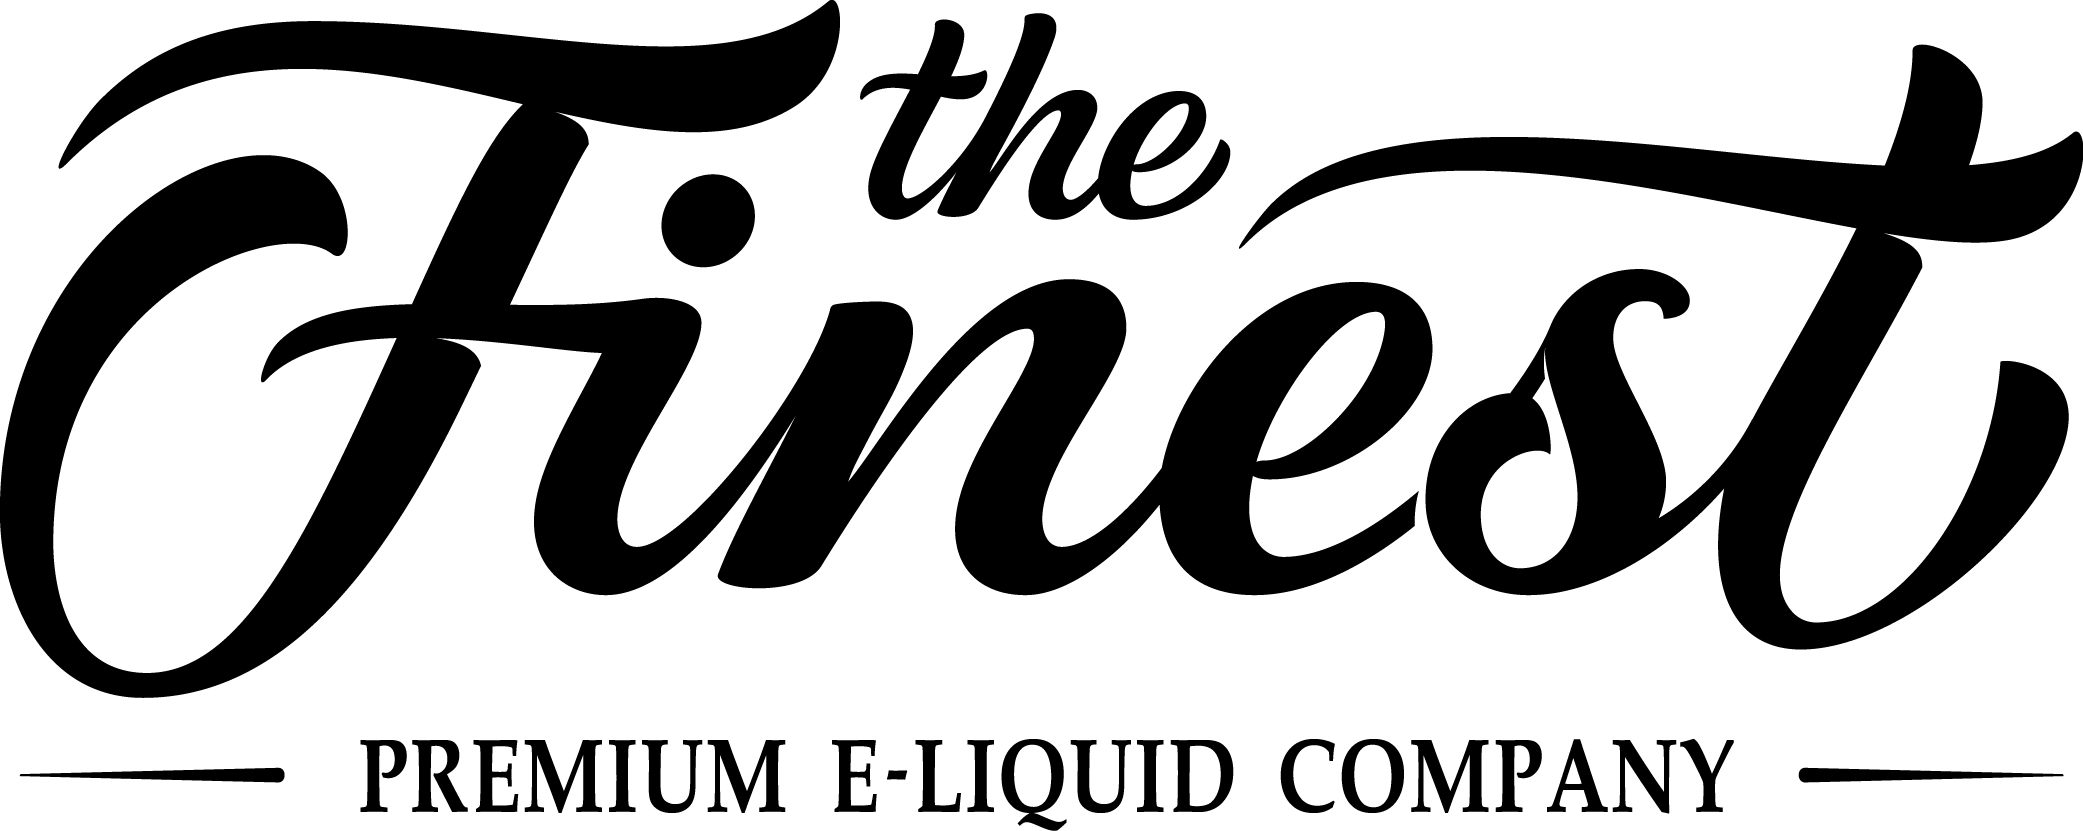 E-Juice Logo - The Finest E-Liquid